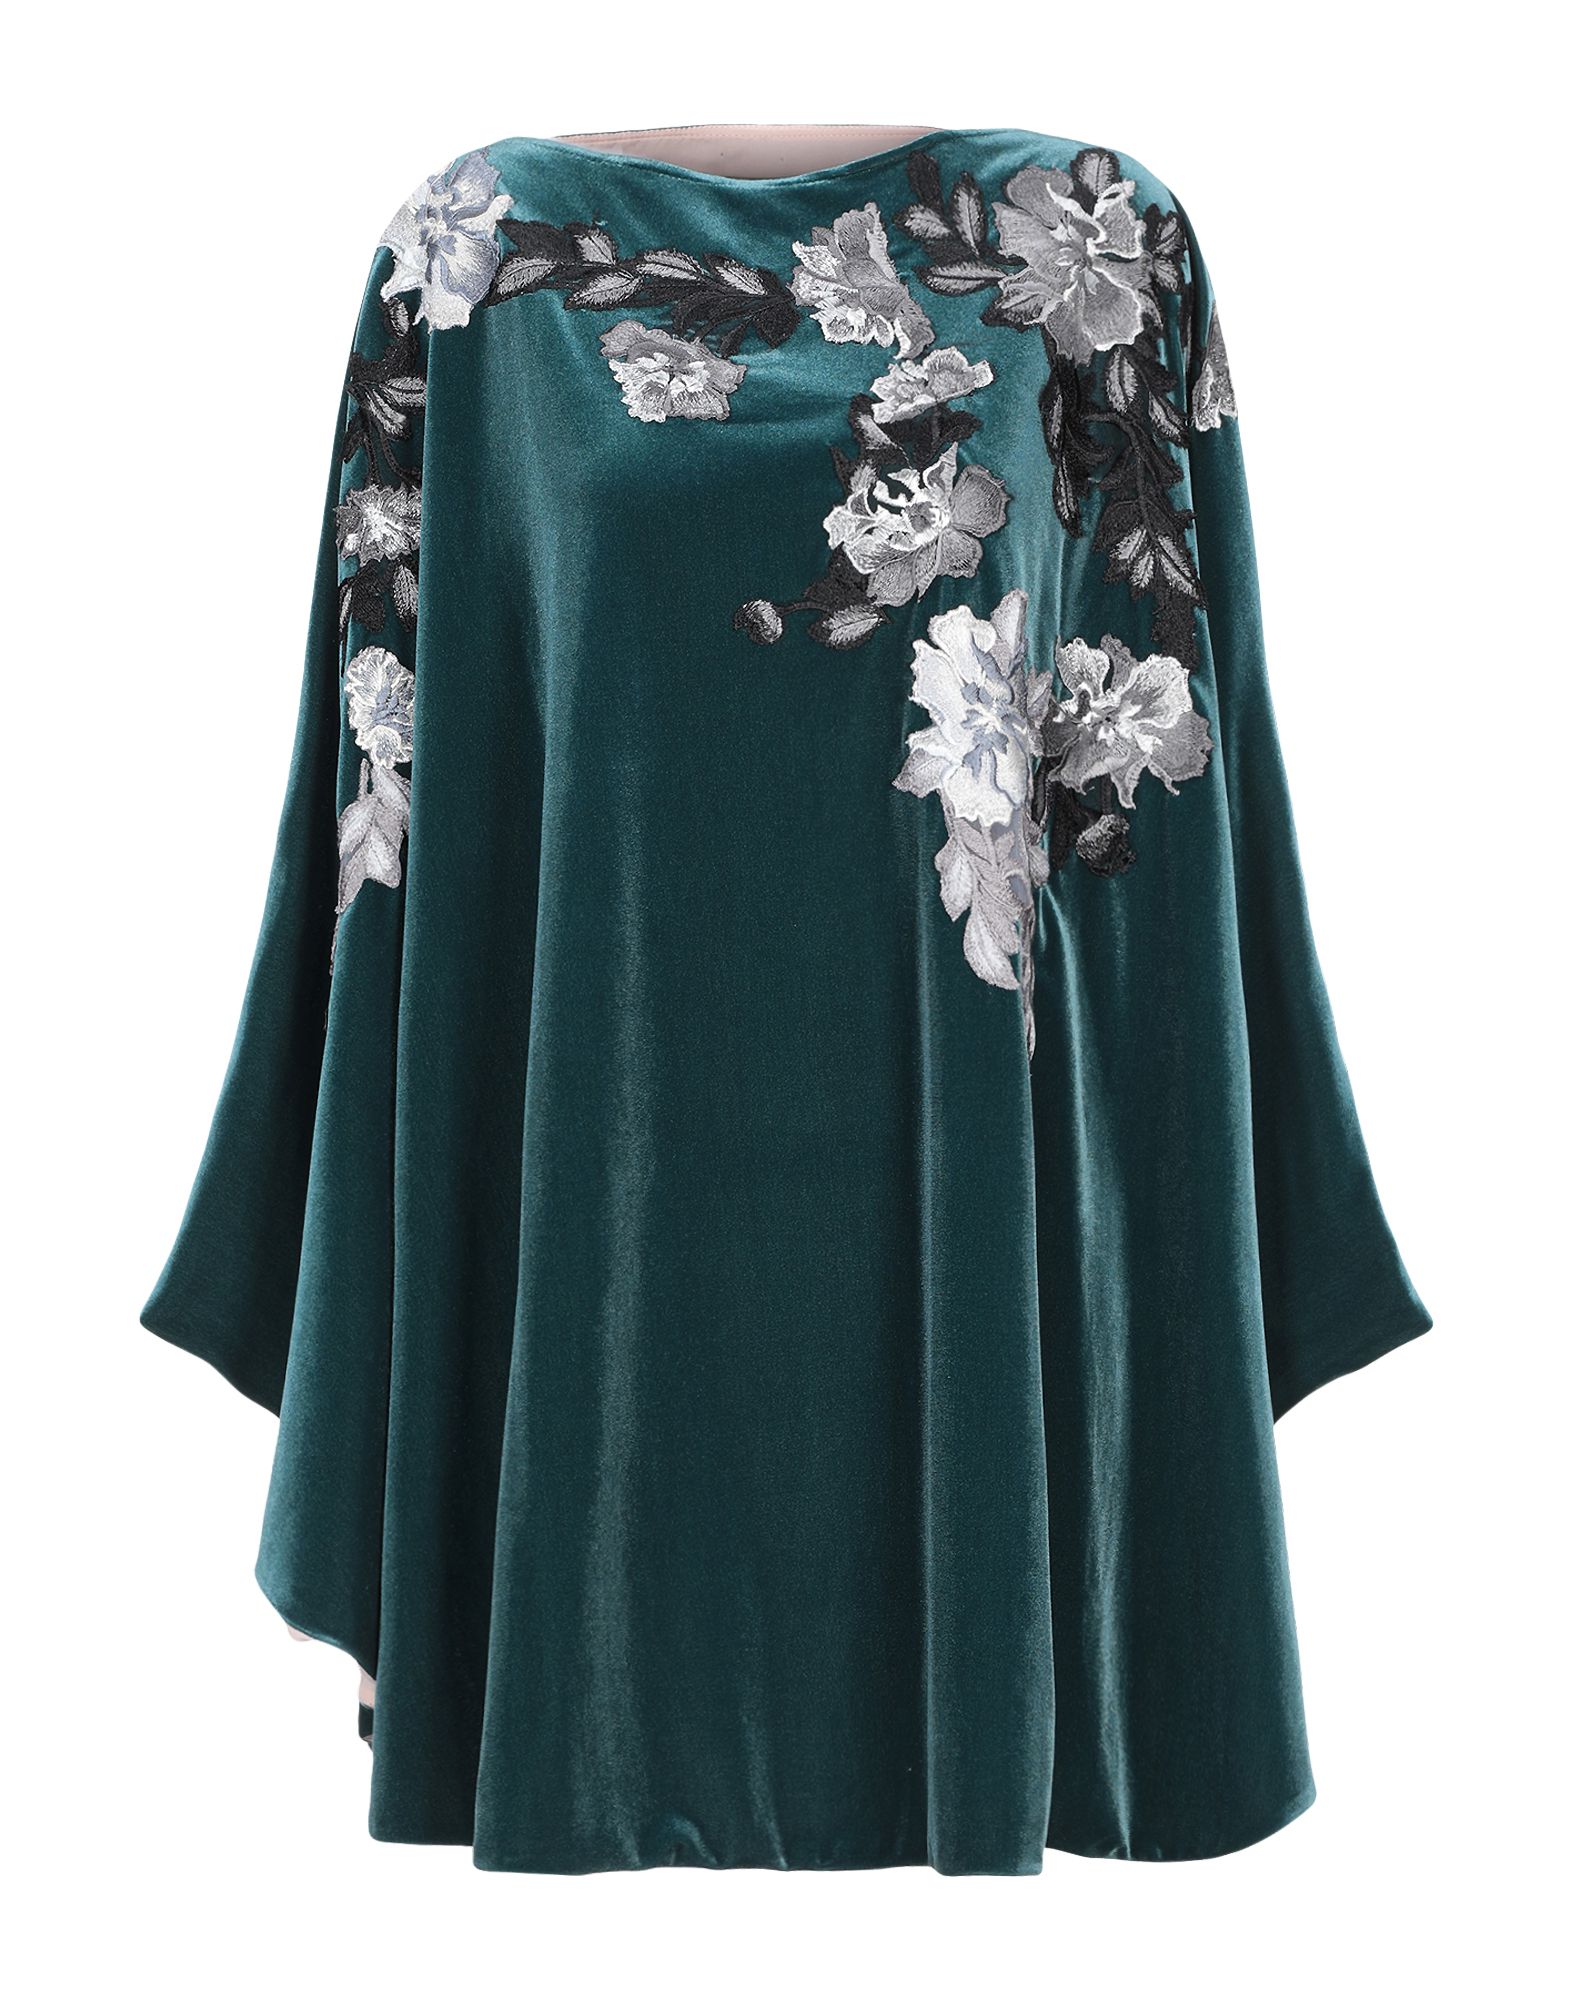 Короткое платье  - Зеленый цвет